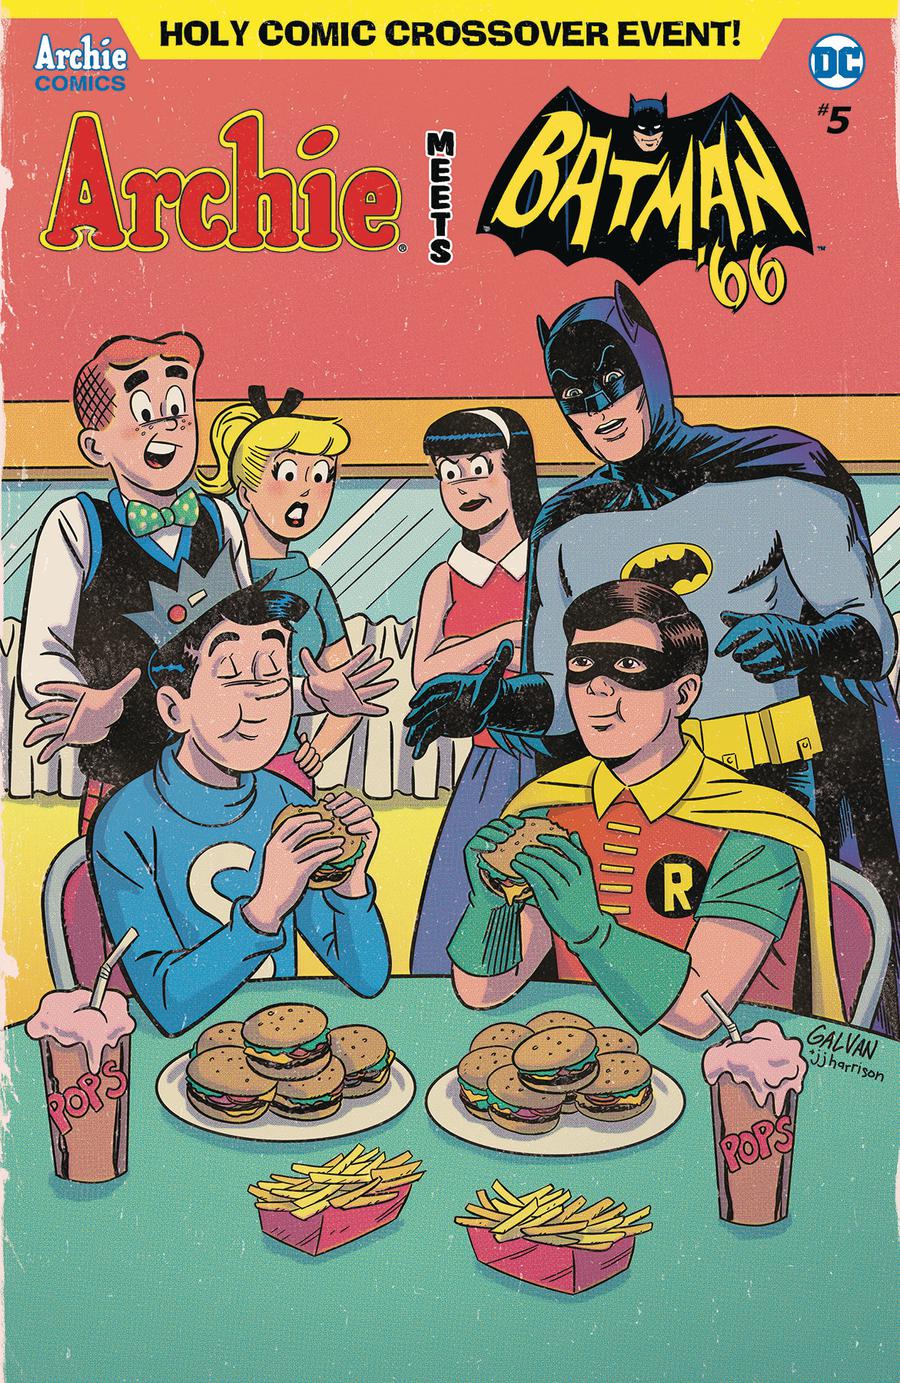 Archie Meets Batman 66 #5 Cover C Variant Bill Galvan Cover